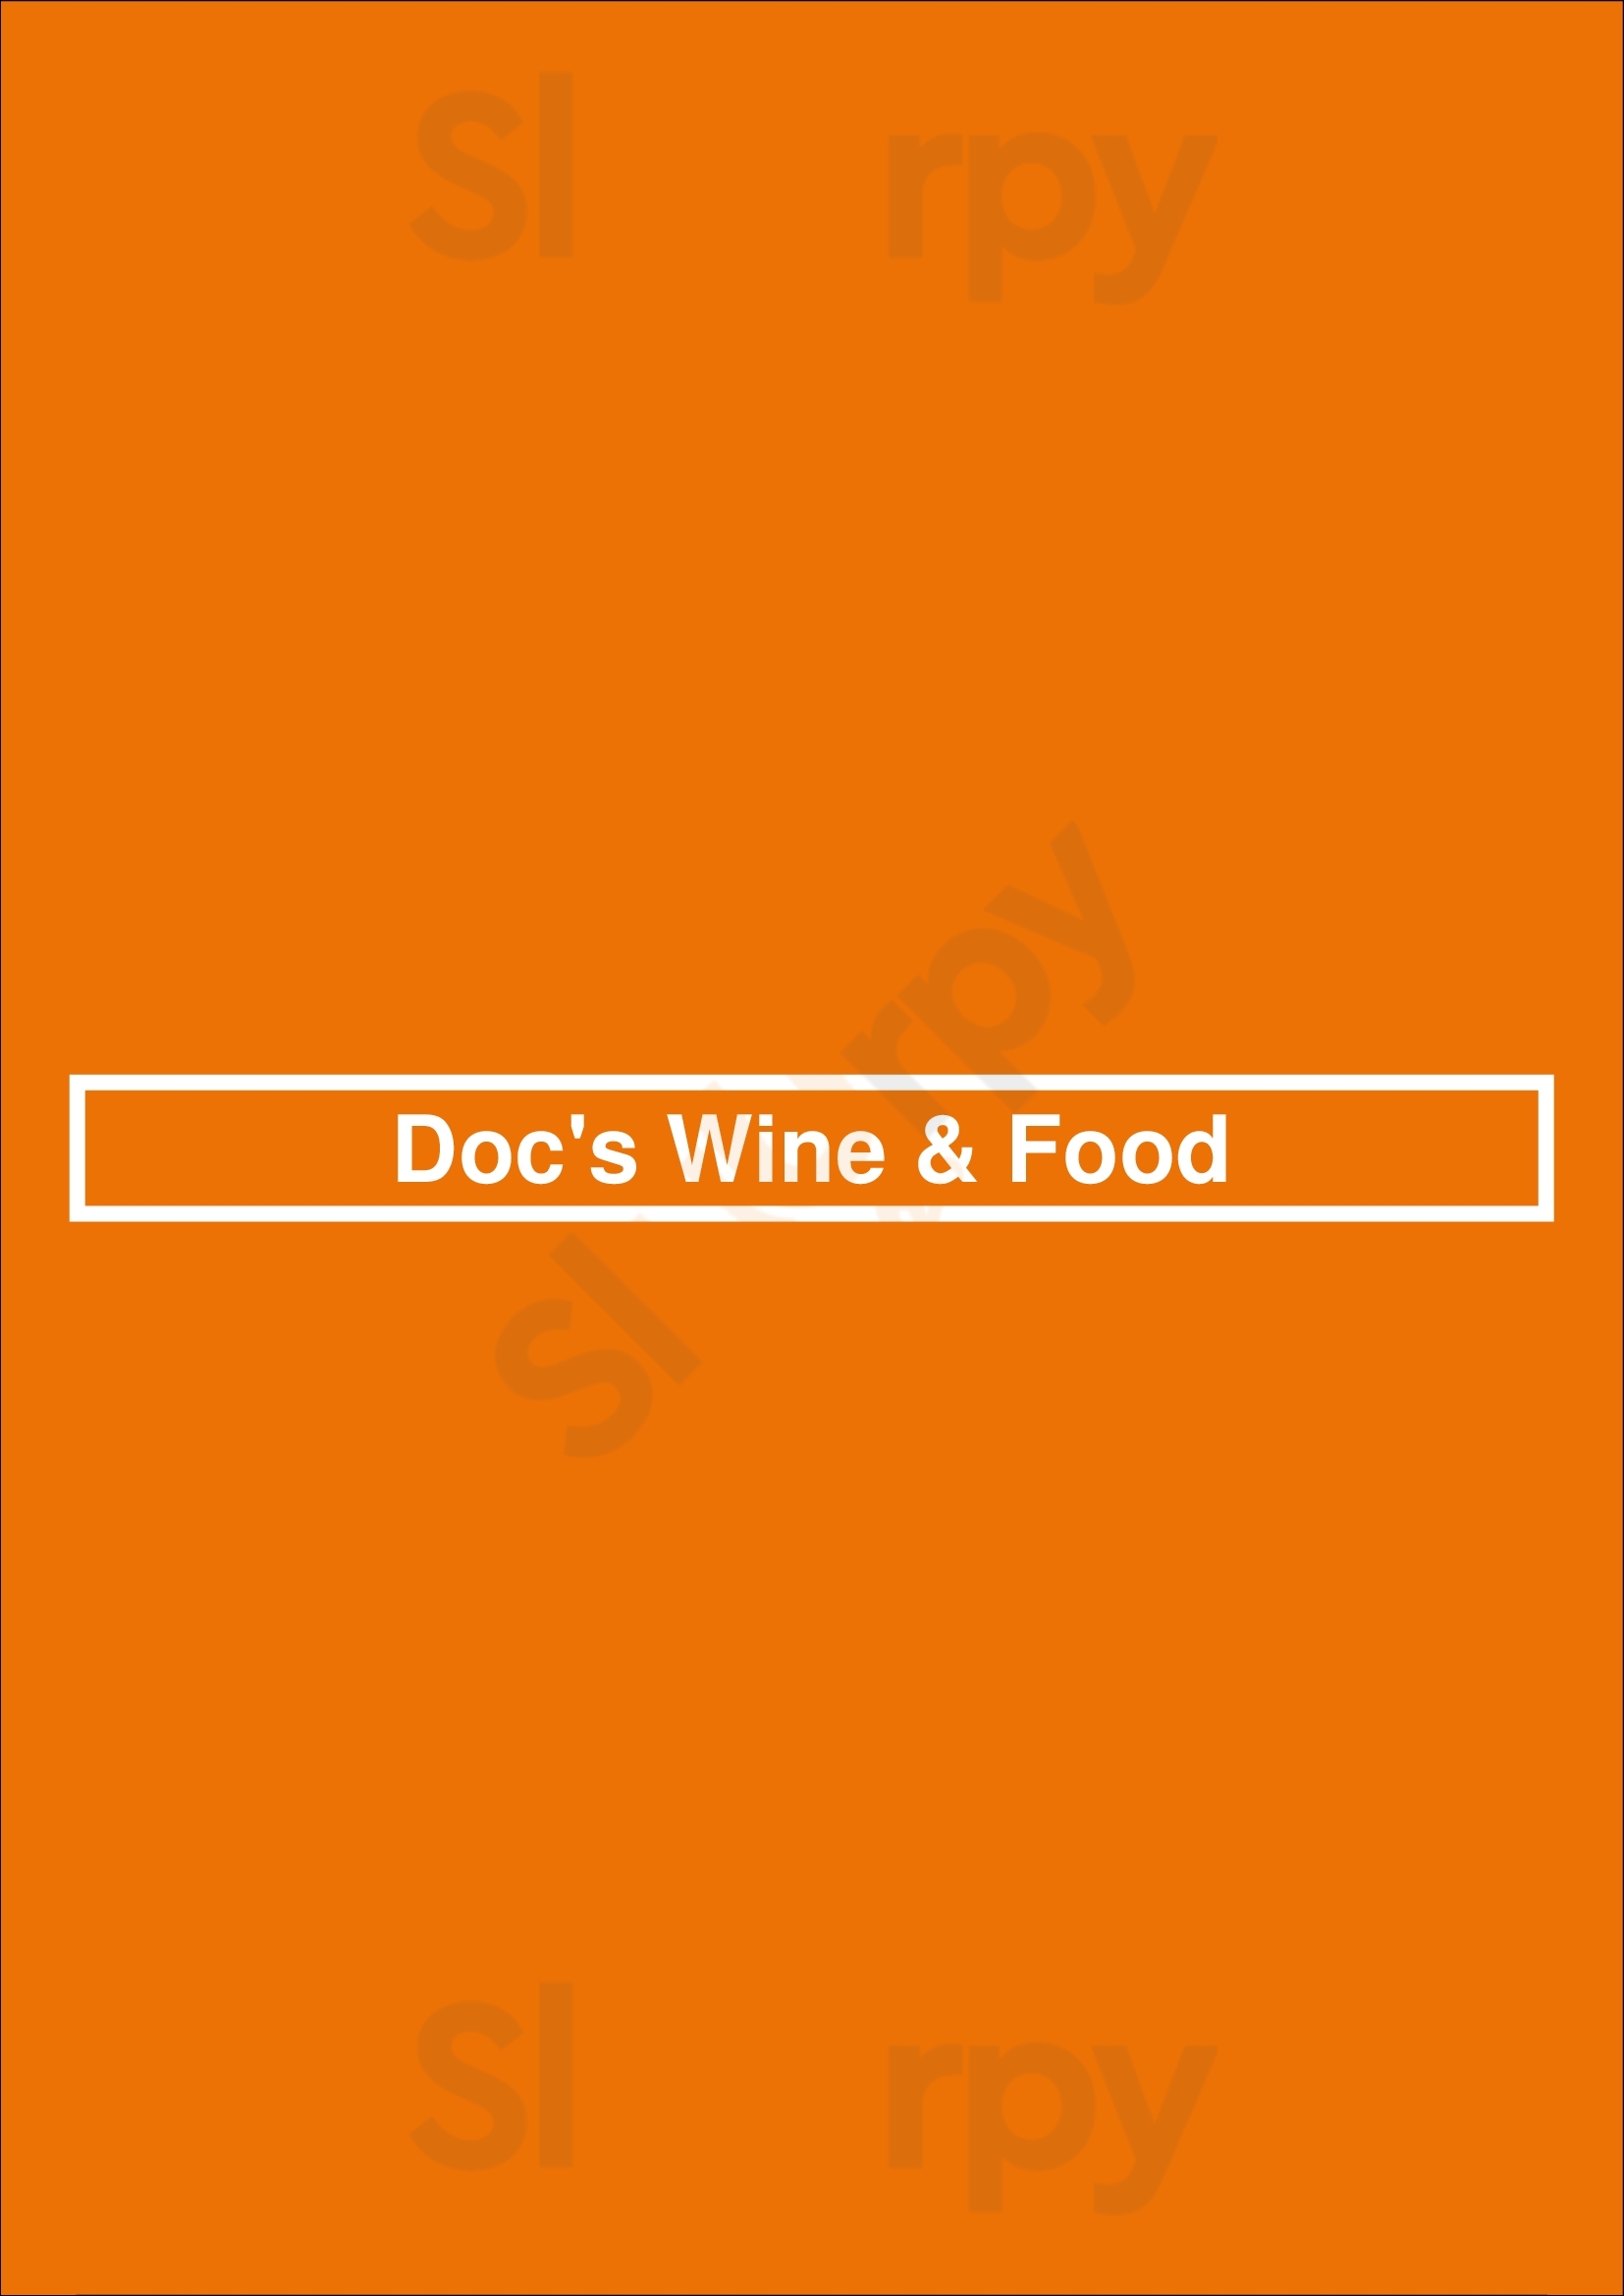 Doc's Wine & Food Tulsa Menu - 1